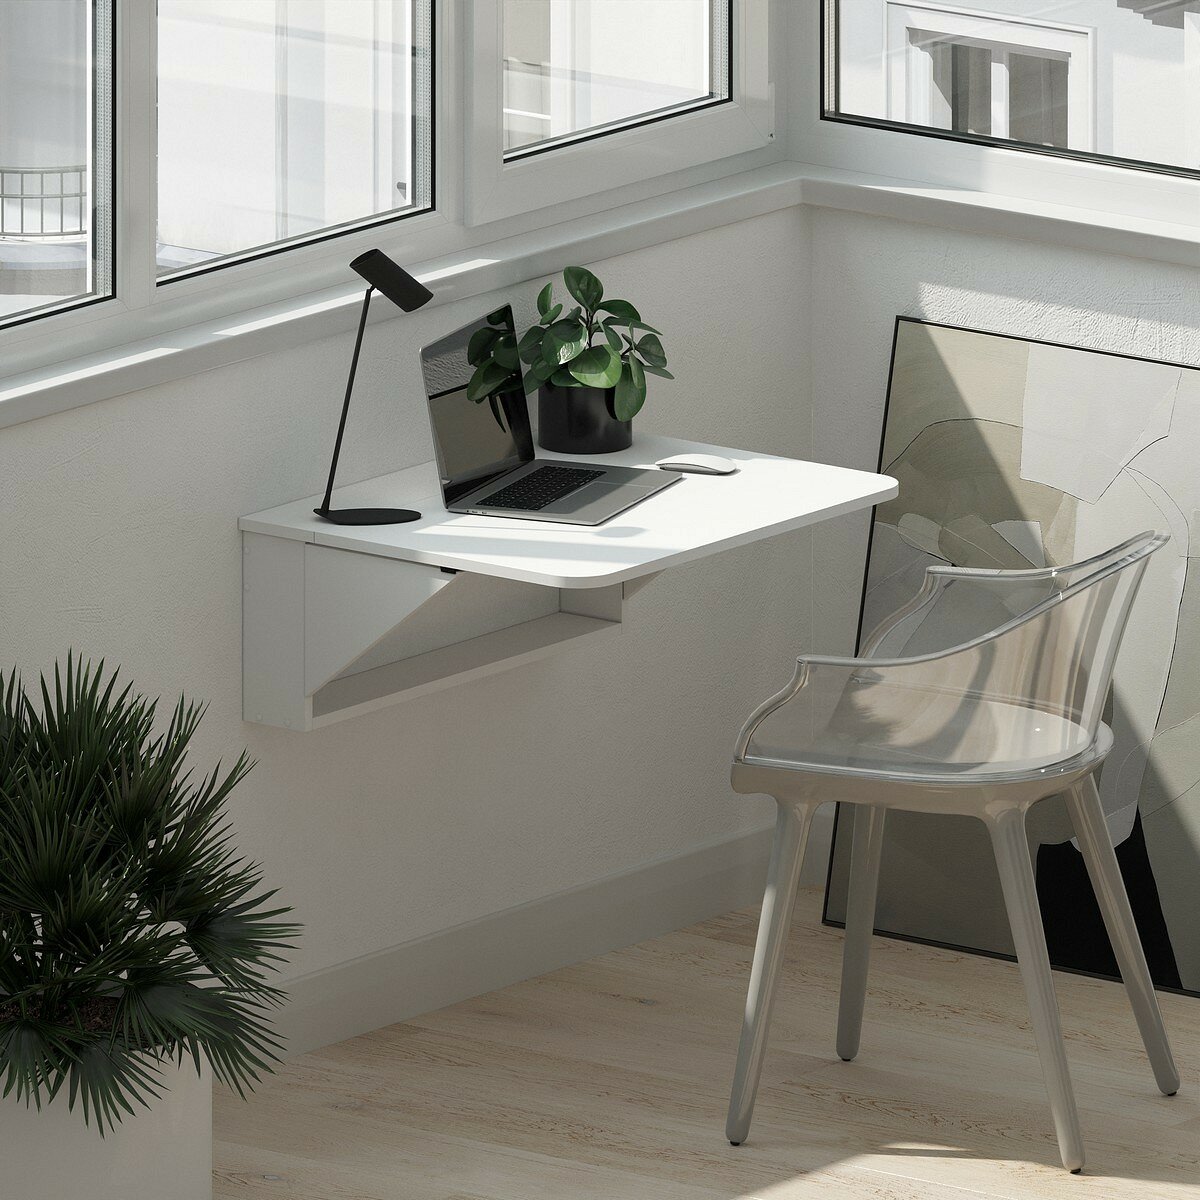 Столик складной откидной настенный HESBY Amazing Assistant для ноутбука для спальни на балкон на кухню. Габариты: 60х53х28 см. Цвет: дуб молочный / венге